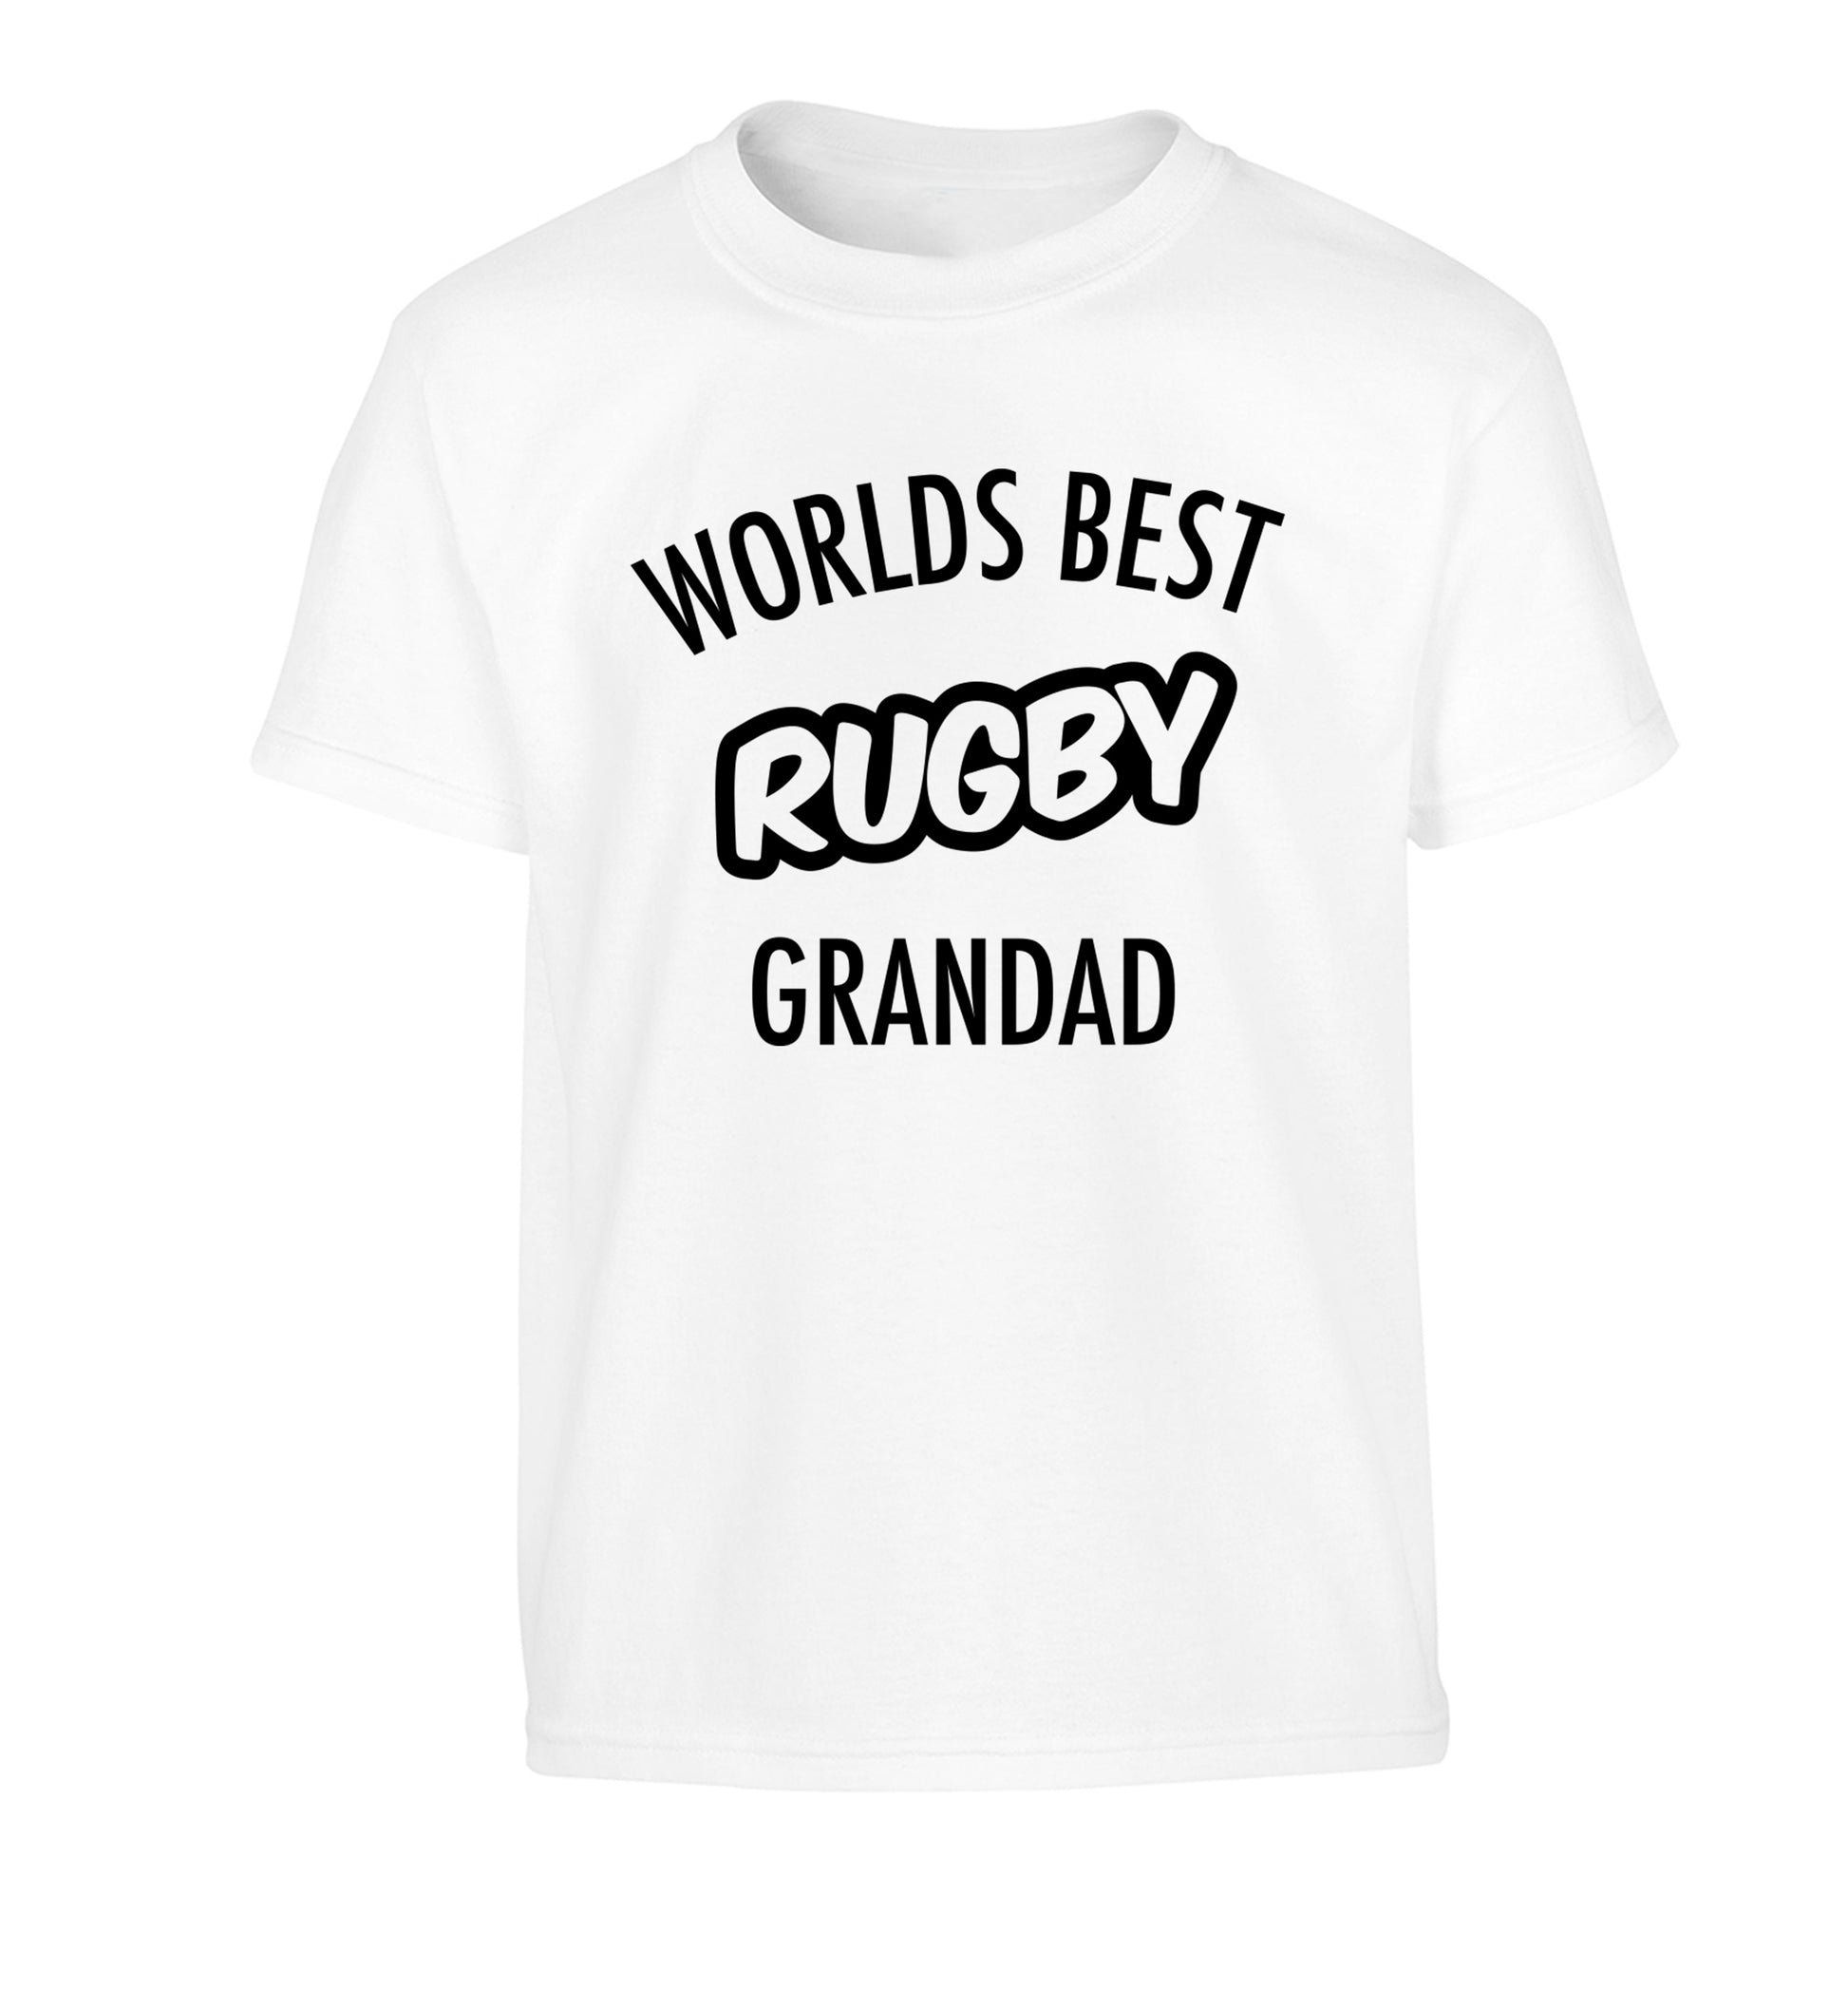 Worlds best rugby grandad Children's white Tshirt 12-13 Years